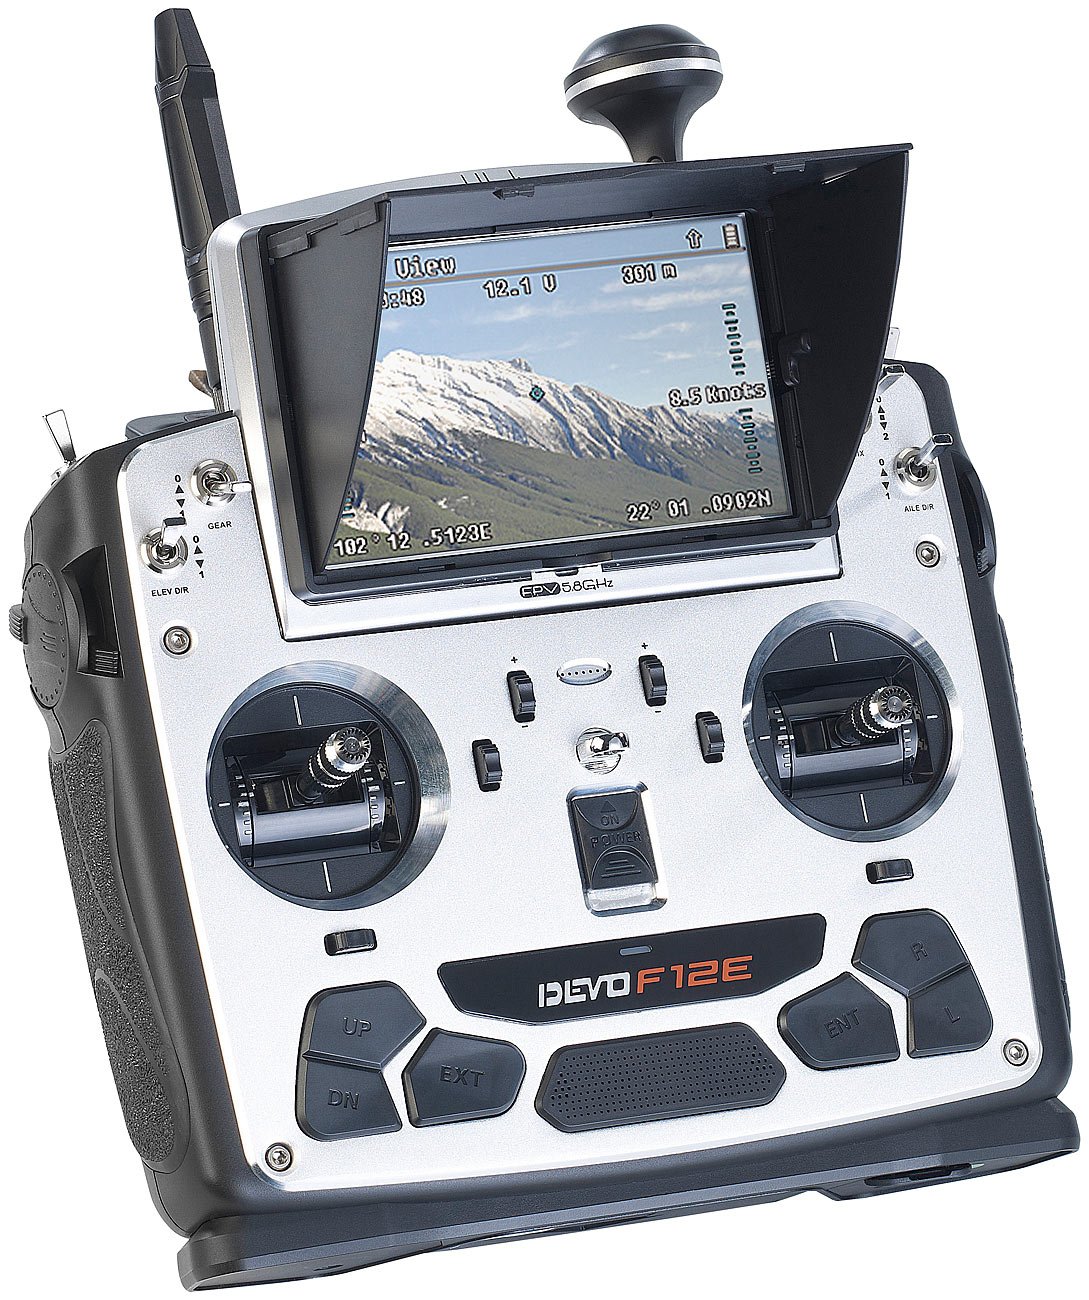 Simulus Zubehör zu Fernsteuerung Drohne: Profi FPV Funk-Fernsteuerung DEVO F12E 5,8 GHz (Drohne mit Liveübertragung, GPS-Drohne mit Live-Videokamera, RC)